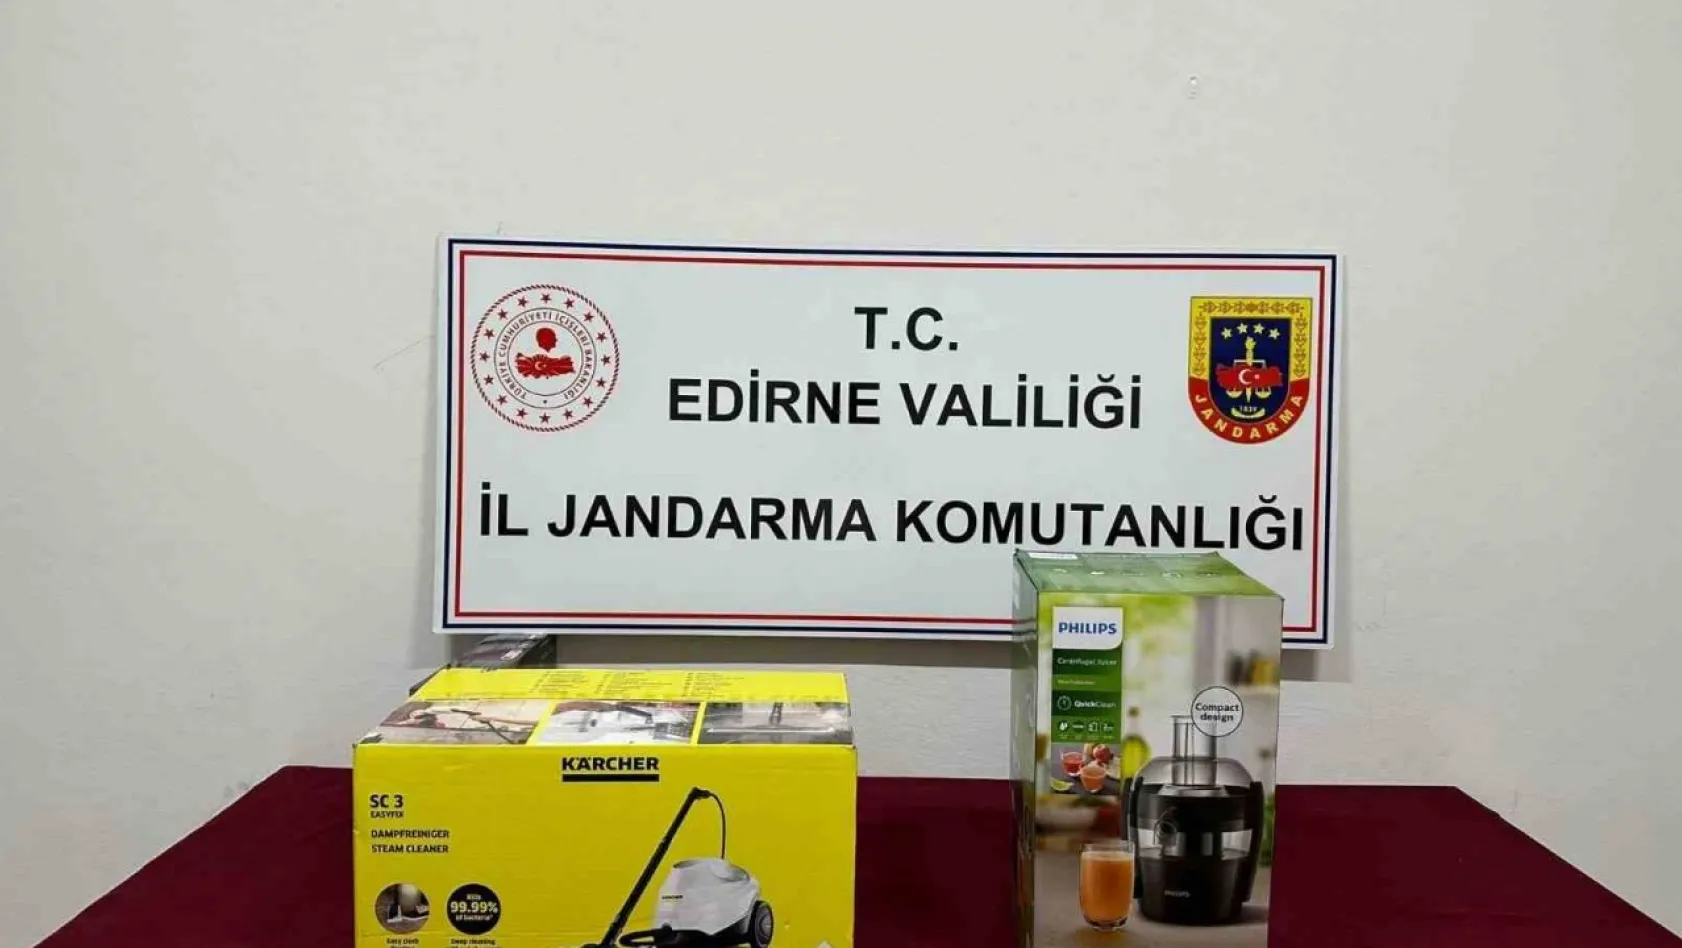 Edirne'de gümrük kaçağı elektrikli süpürge ve meyve sıkacağı ele geçirildi